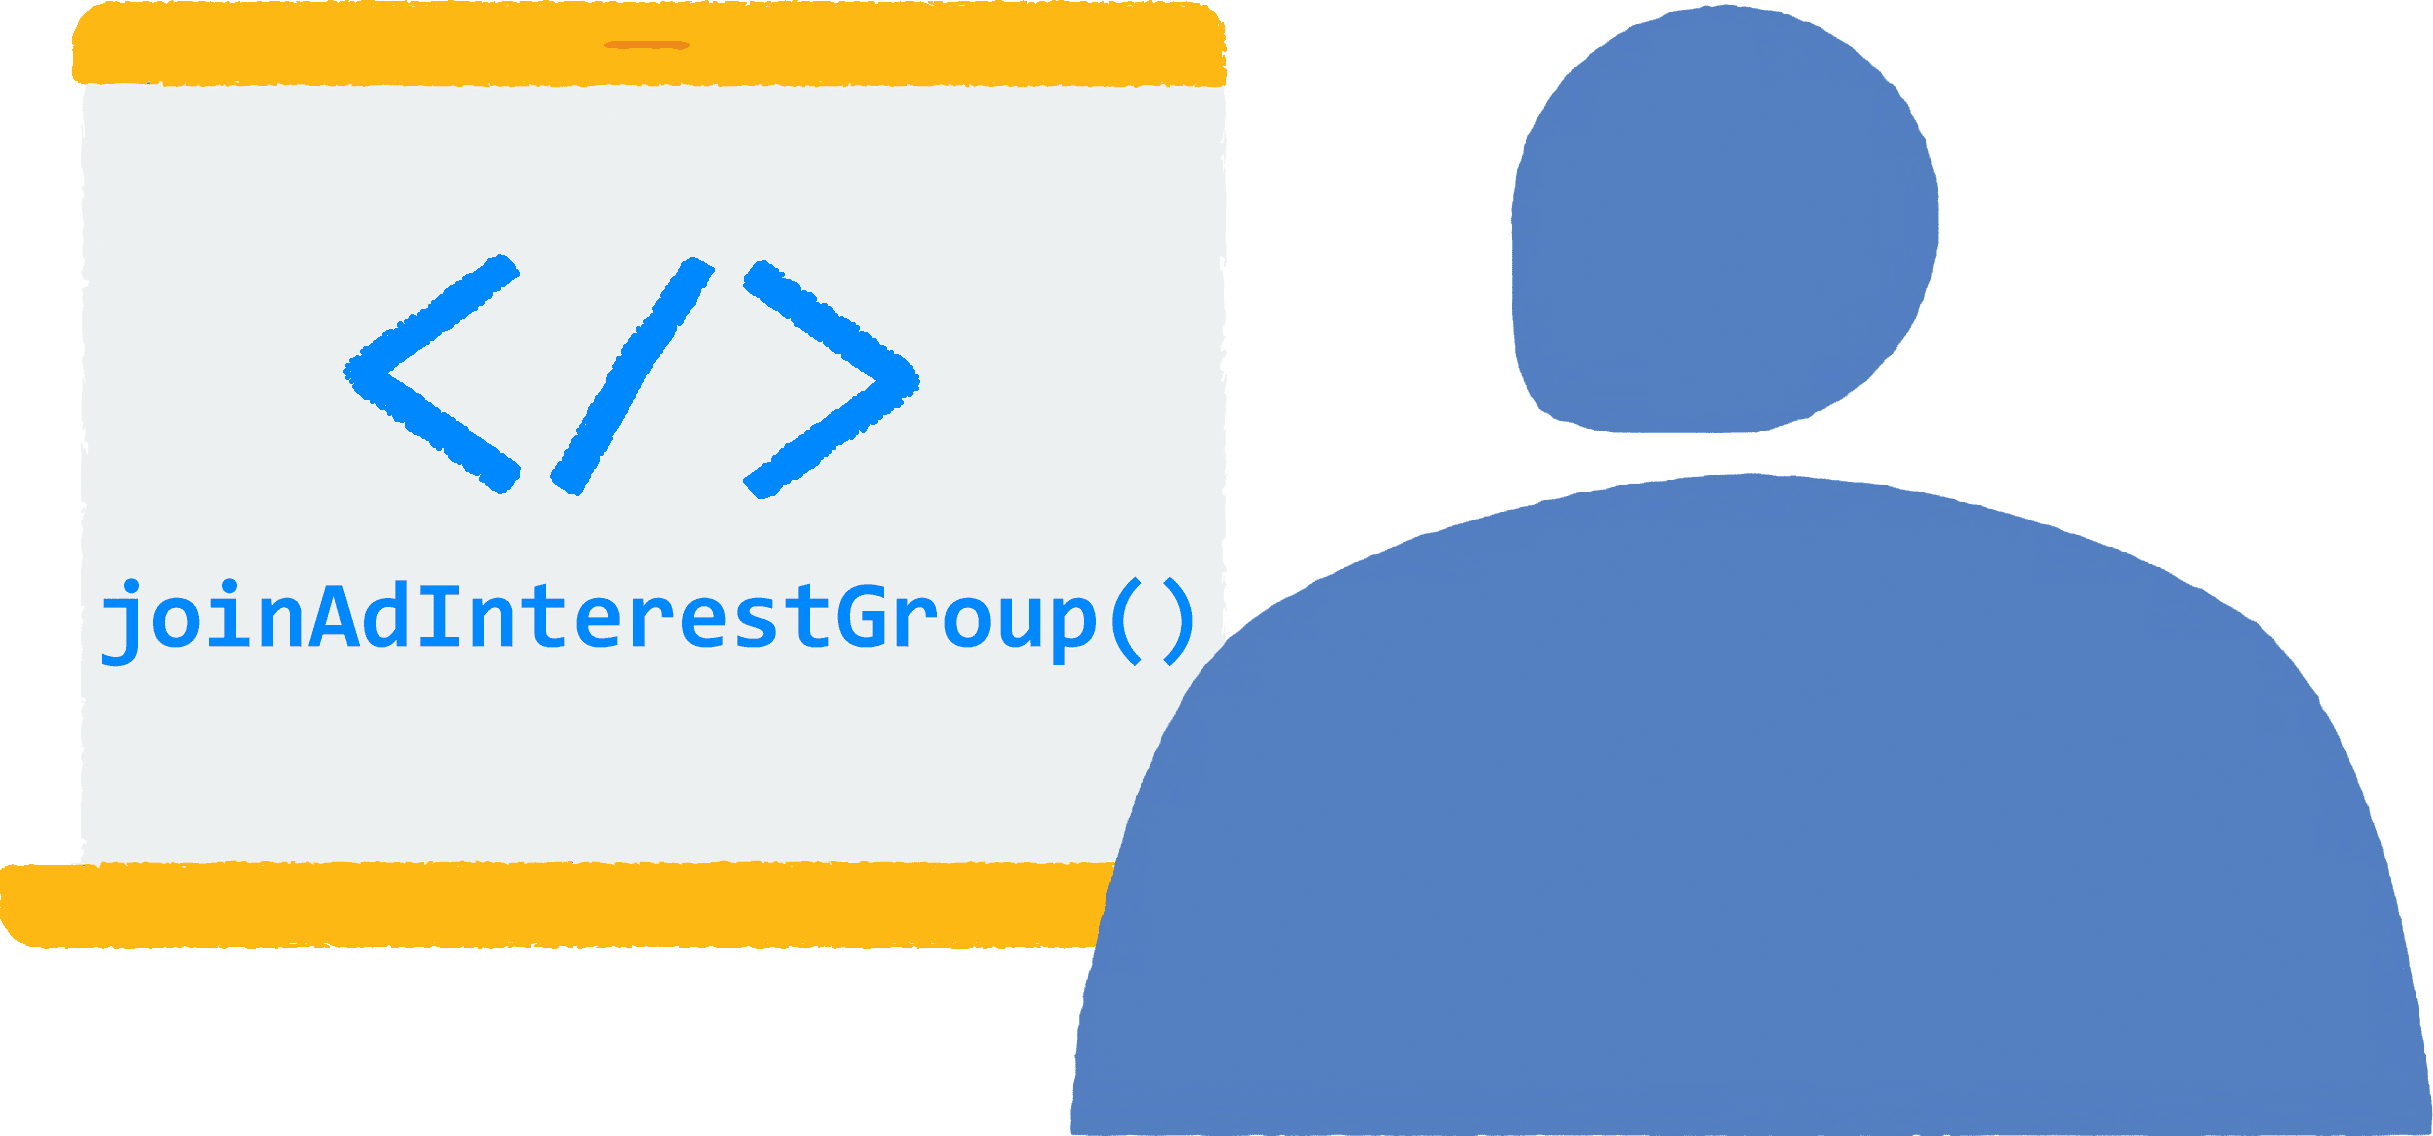 Un usuario abre un navegador en su laptop y visita un sitio. Se está ejecutando en el navegador el código JavaScript para unirse a grupos de interés de anuncios.